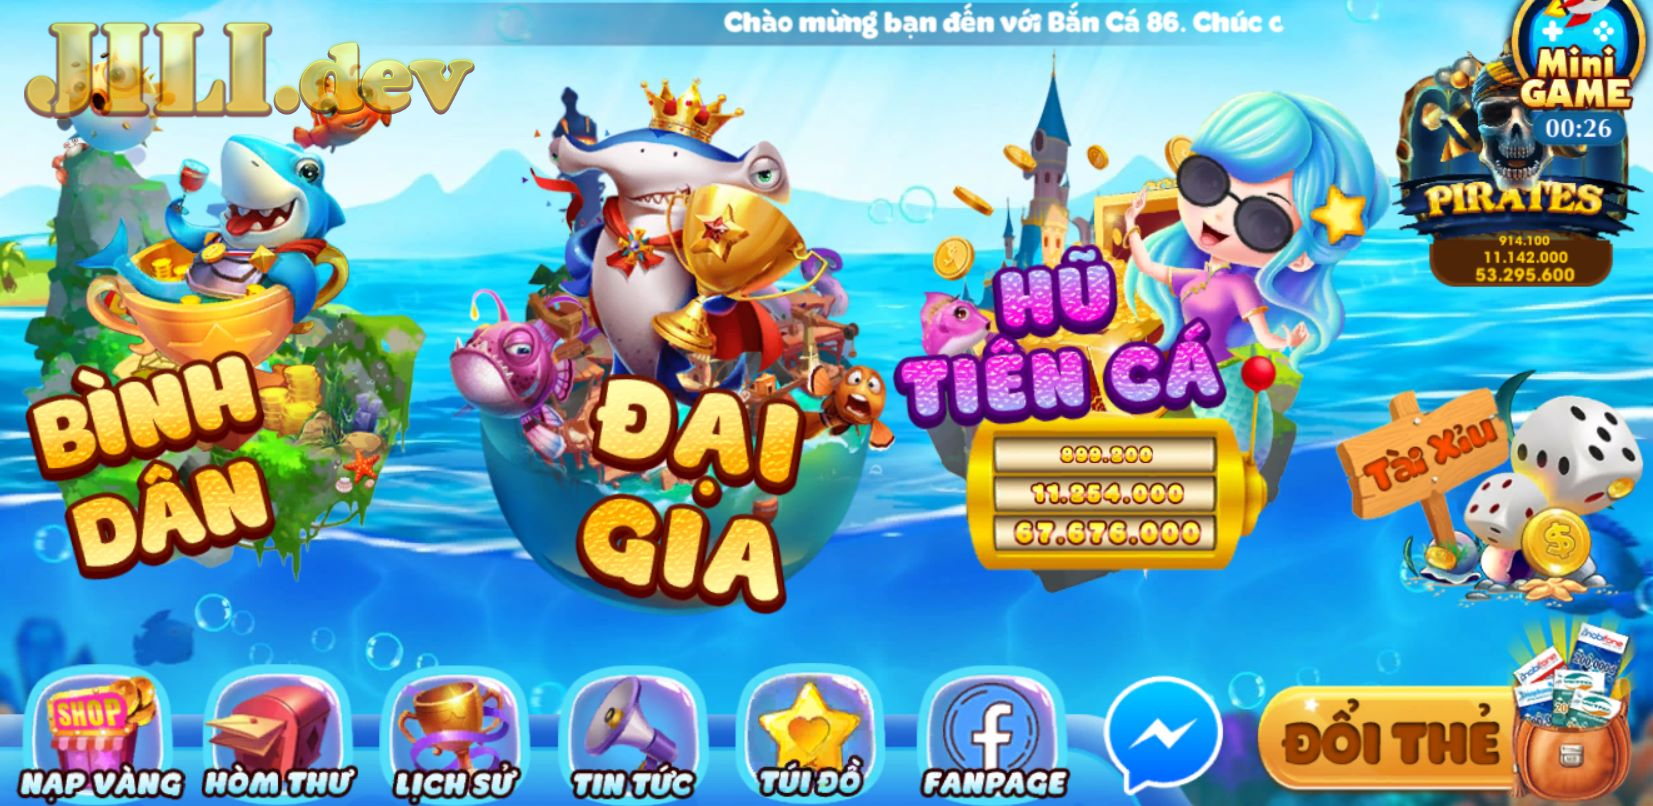 Giao diện thiết kế của cổng game Bắn Cá Phát Lộc 86